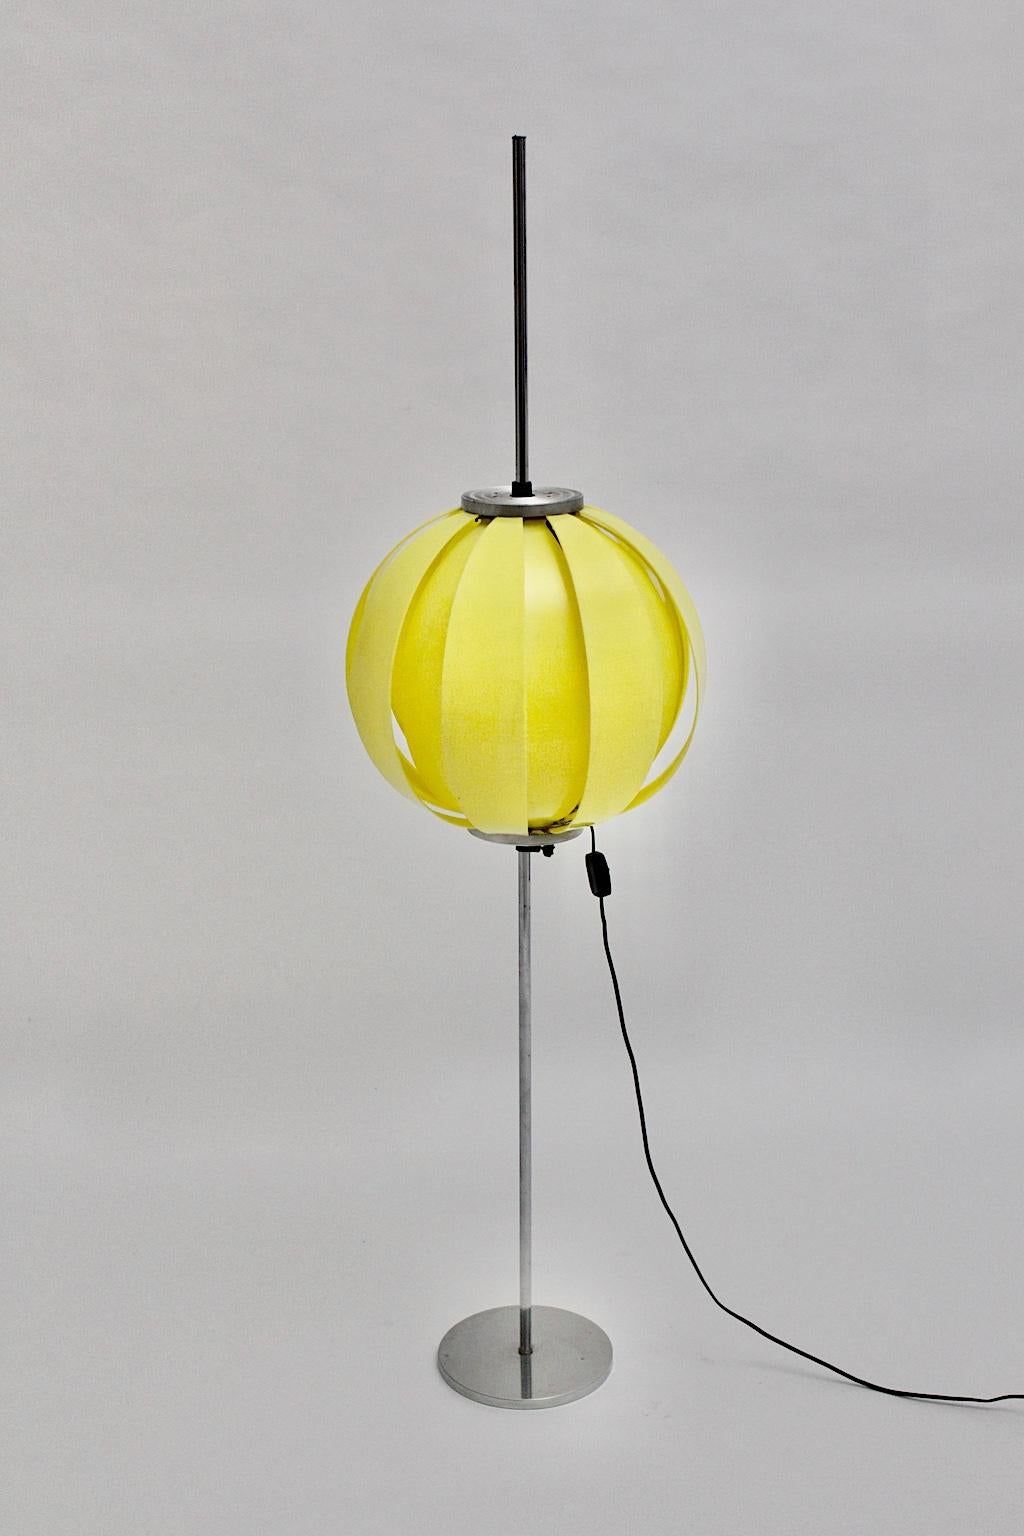 Pop Art Stehlampe aus Kunststoff mit Kugel, entworfen in den 1960er Jahren.
Die sehr dekorative Kunststoffkugel besteht aus 16 gelben, lamellenartigen Kunststoffteilen und der Stiel wurde aus Chrom und Aluminium gefertigt.
Eine Steckdose E 27 und